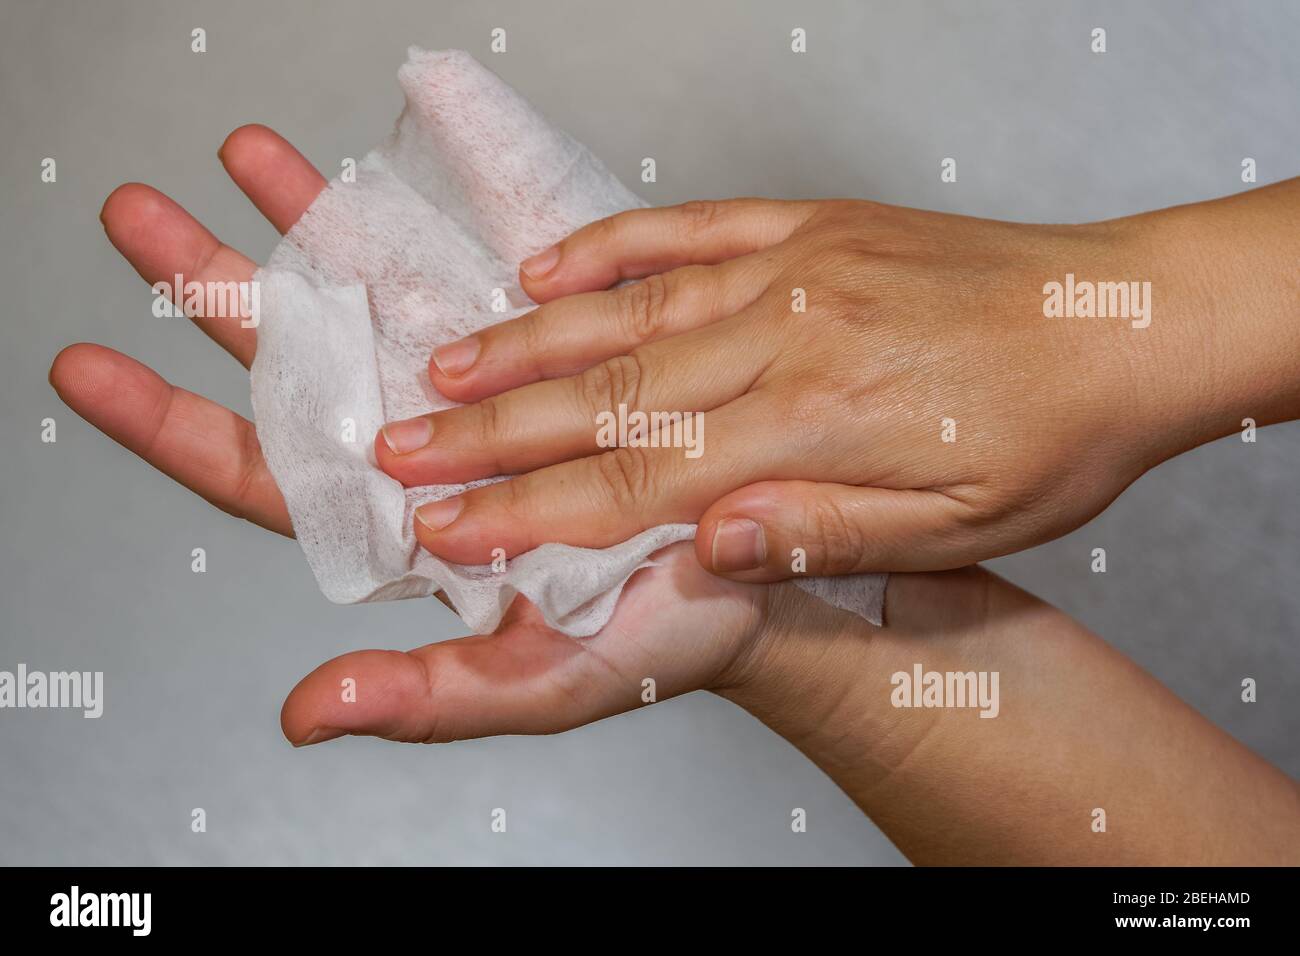 Limpieza eficaz de las manos con toallitas antisépticas desinfectantes para manos a base de alcohol. La hembra retiene un paño suave humedecido con textura y lo frota como desinfectante Foto de stock